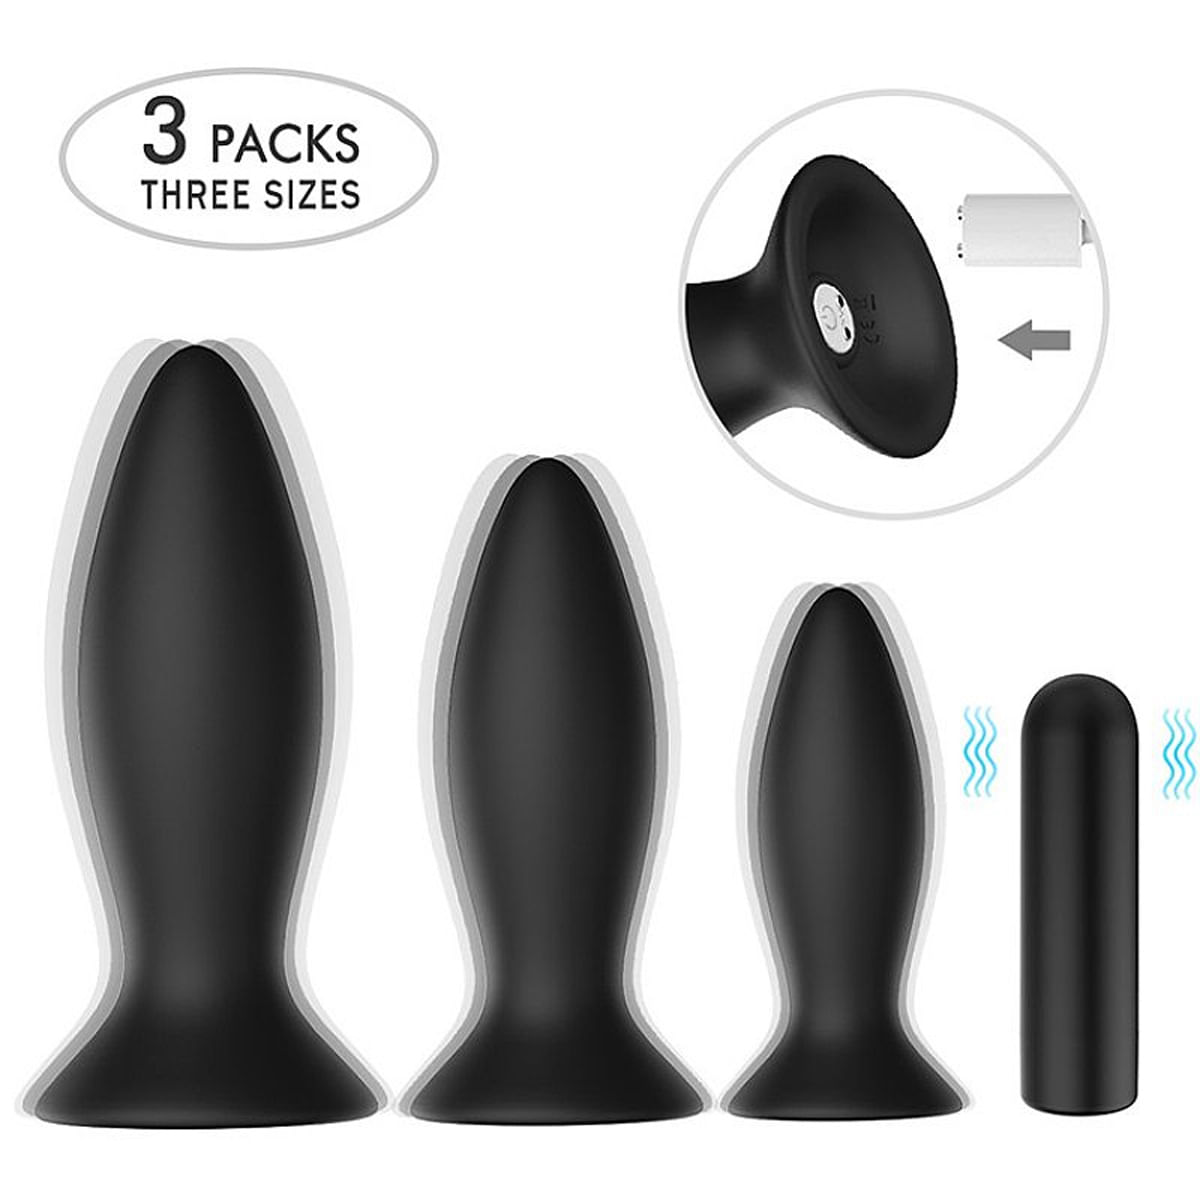 S-Hande Roar RCT Kit Plug Anal com 12 Modos de Vibração Sexy Import